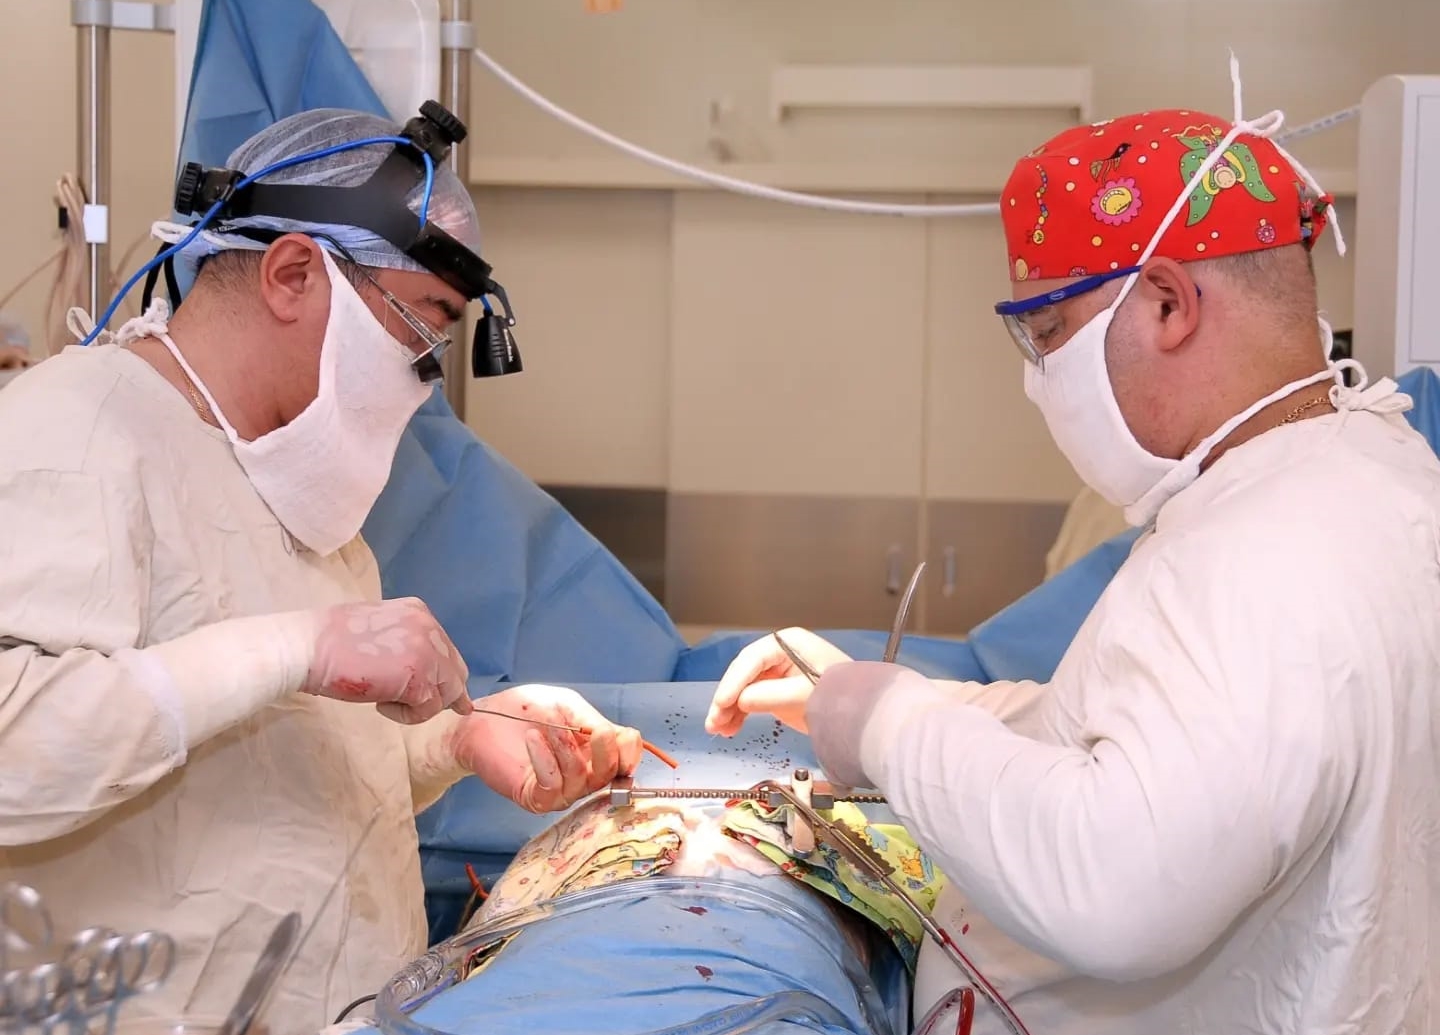 Ижевские врачи впервые провели операцию по замене аорты